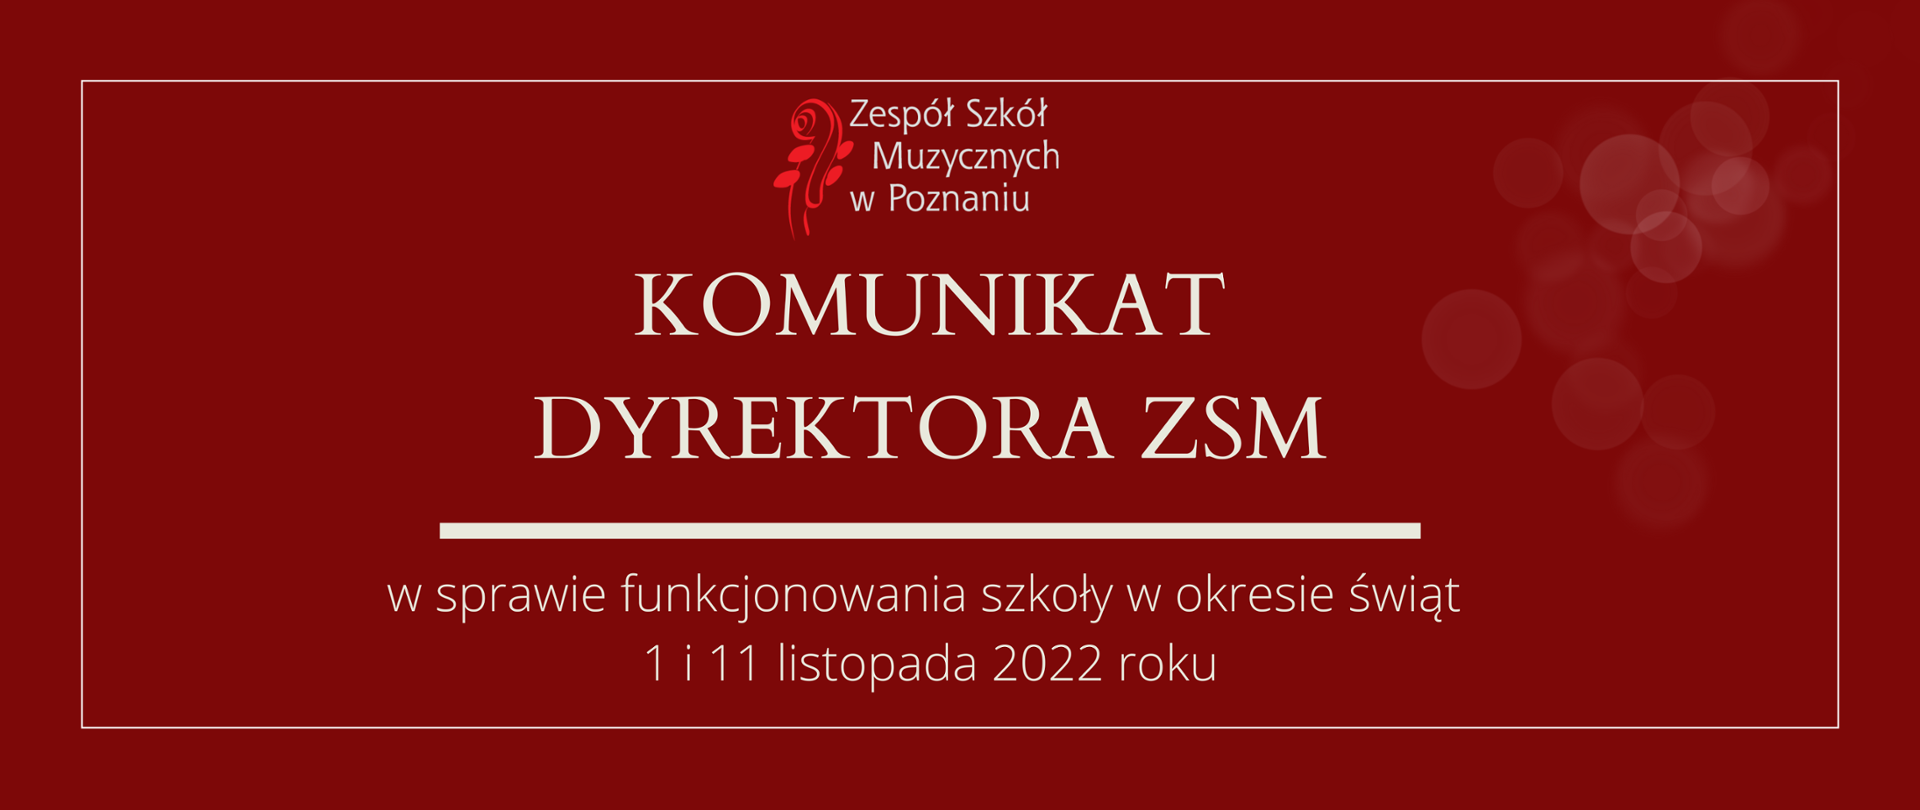 Grafika w wiśniowym odcieniu z logo ZSM i tekstem /"KOMUNIKAT DYREKTORA ZSM"/ poniżej biała gruba linia, niżej tekst /"w sprawie funkcjonowania szkoły w okresie świąt 1 i 11 listopada 2022"/